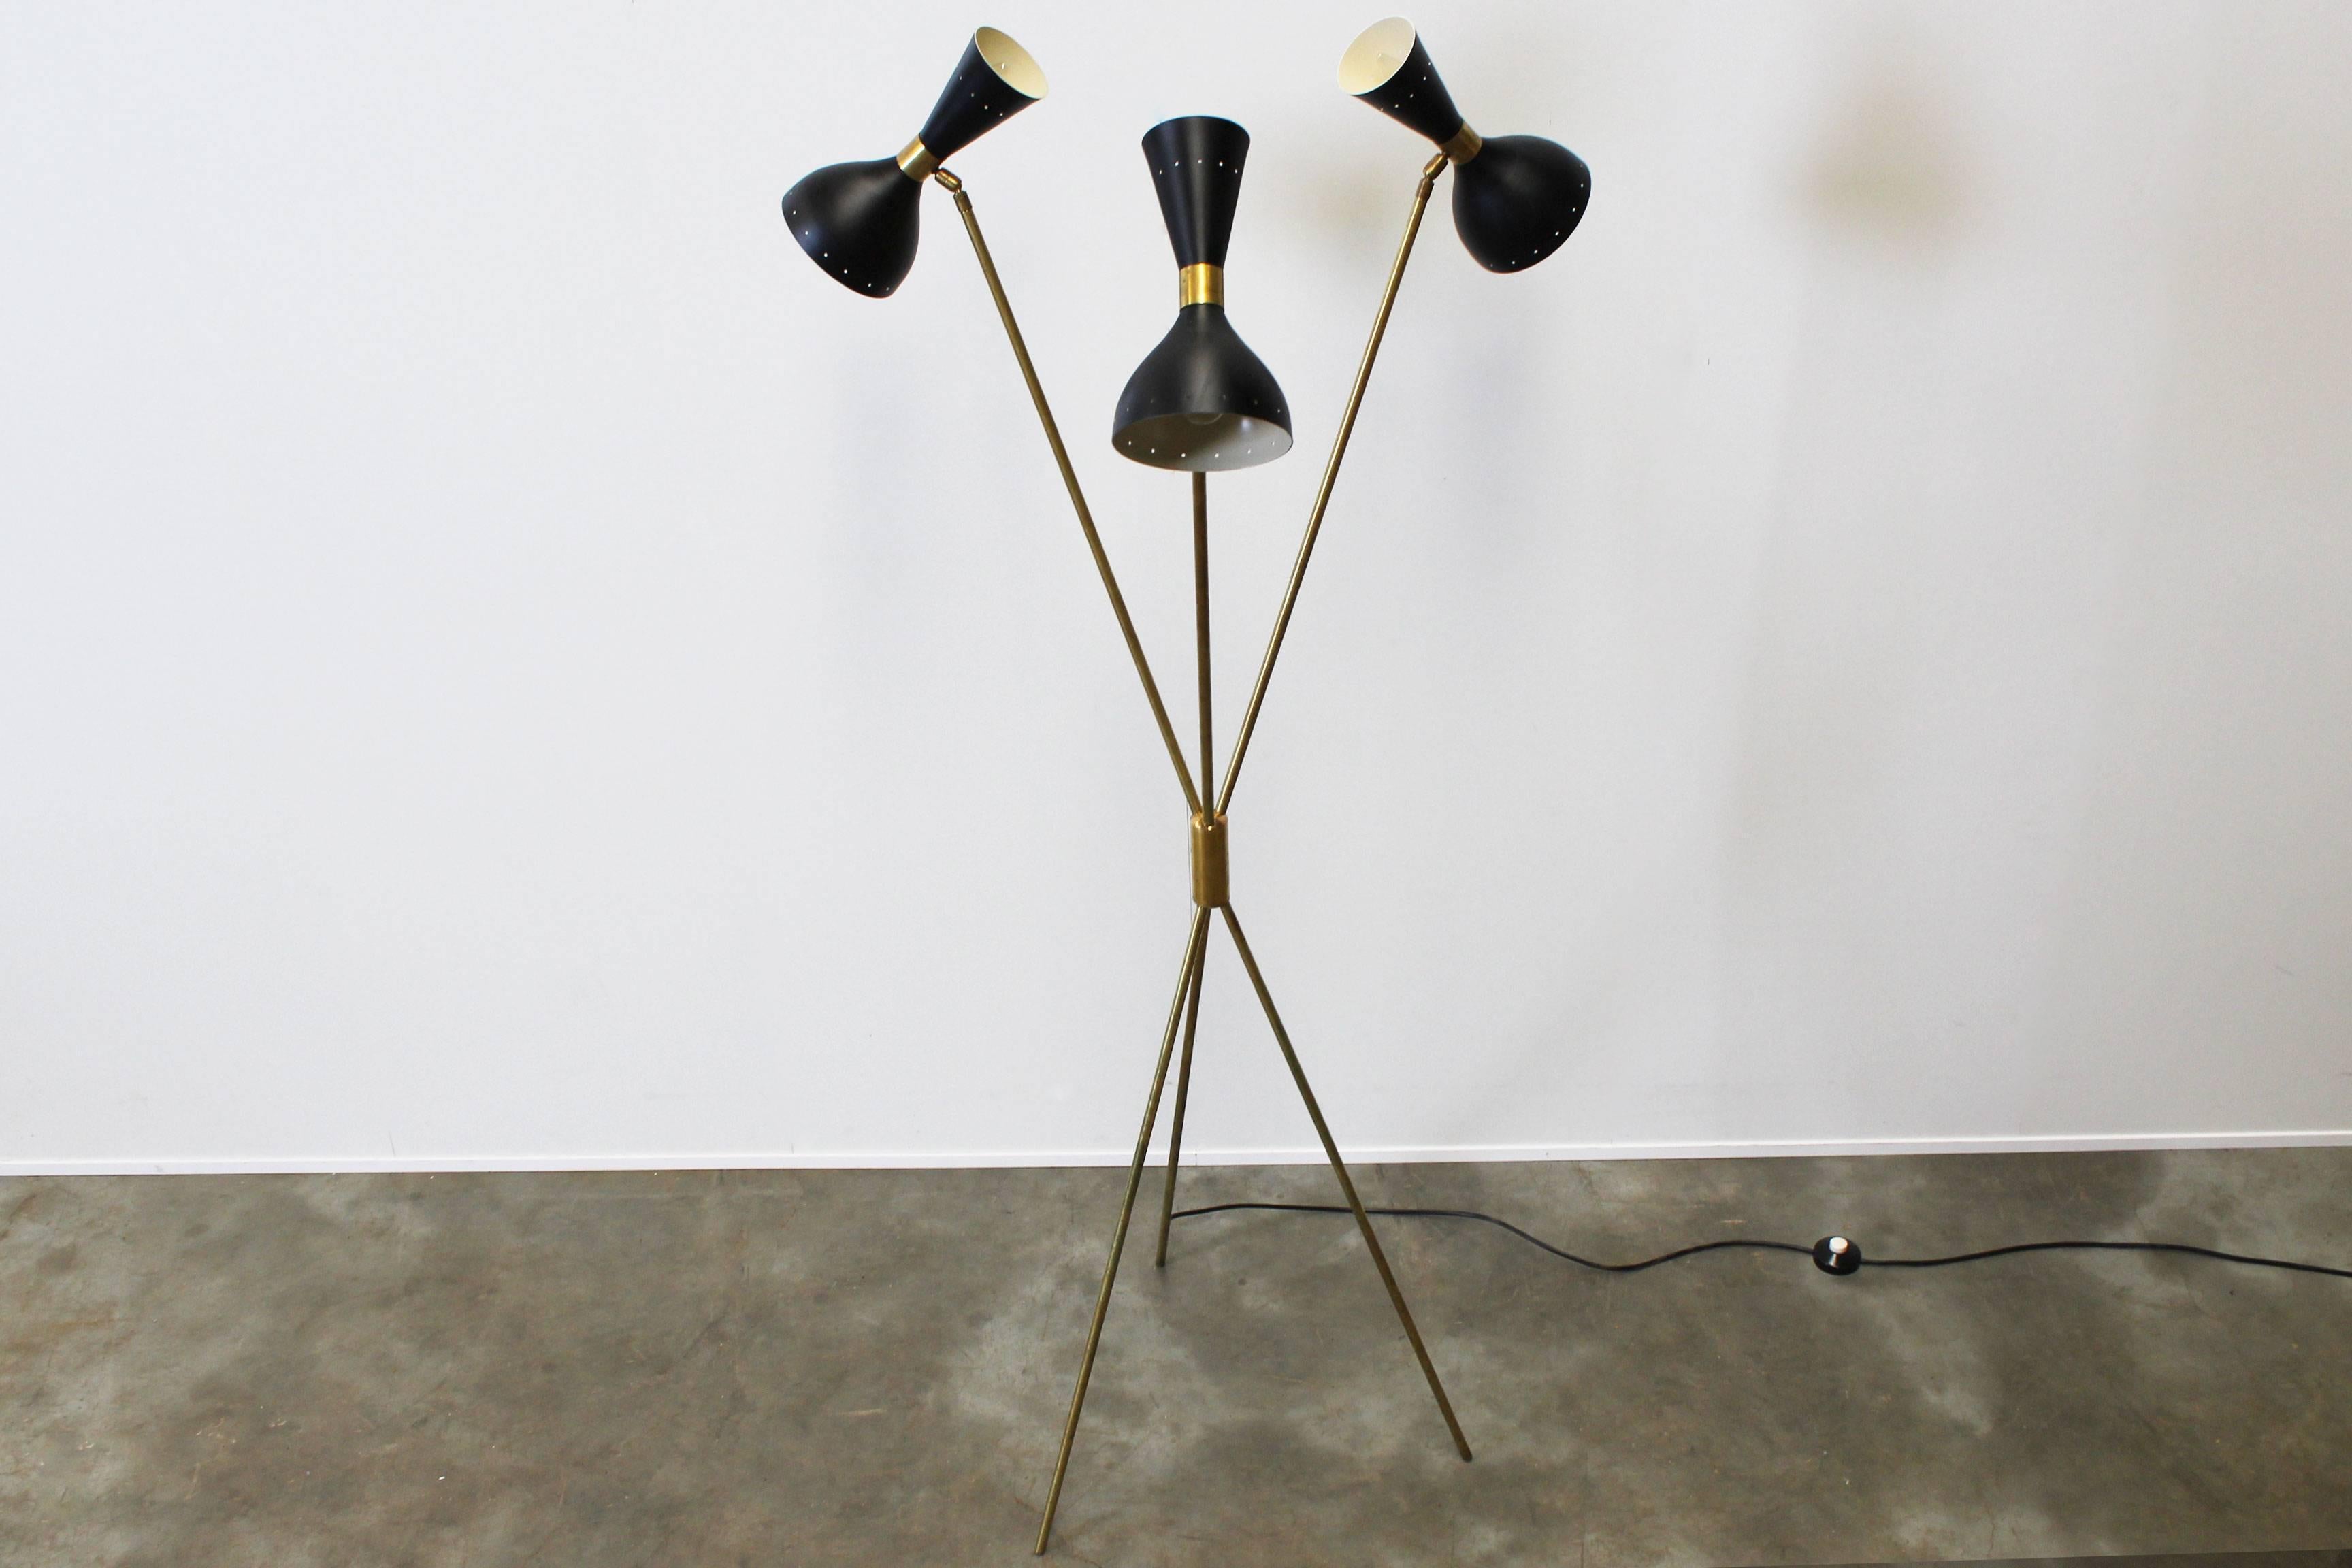 19th Century Midcentury Design Italian Minimalist Floor Lamp Style 1950s Stilnovo Brass Black